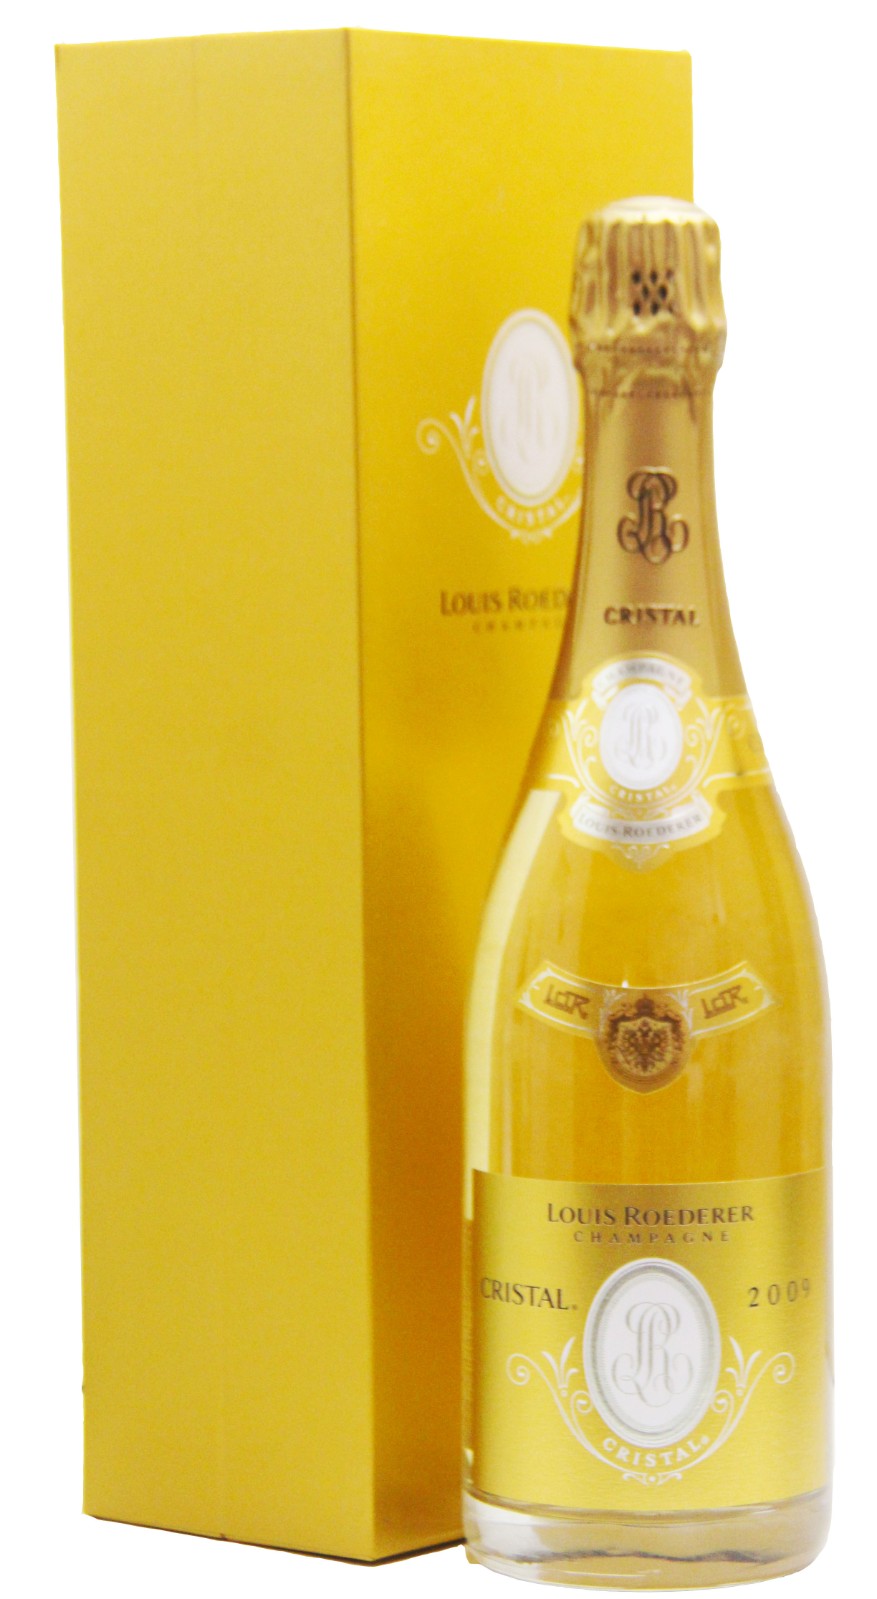 Louis Roederer Cristal , Champagne and Sparkling, 2009 | Vintage